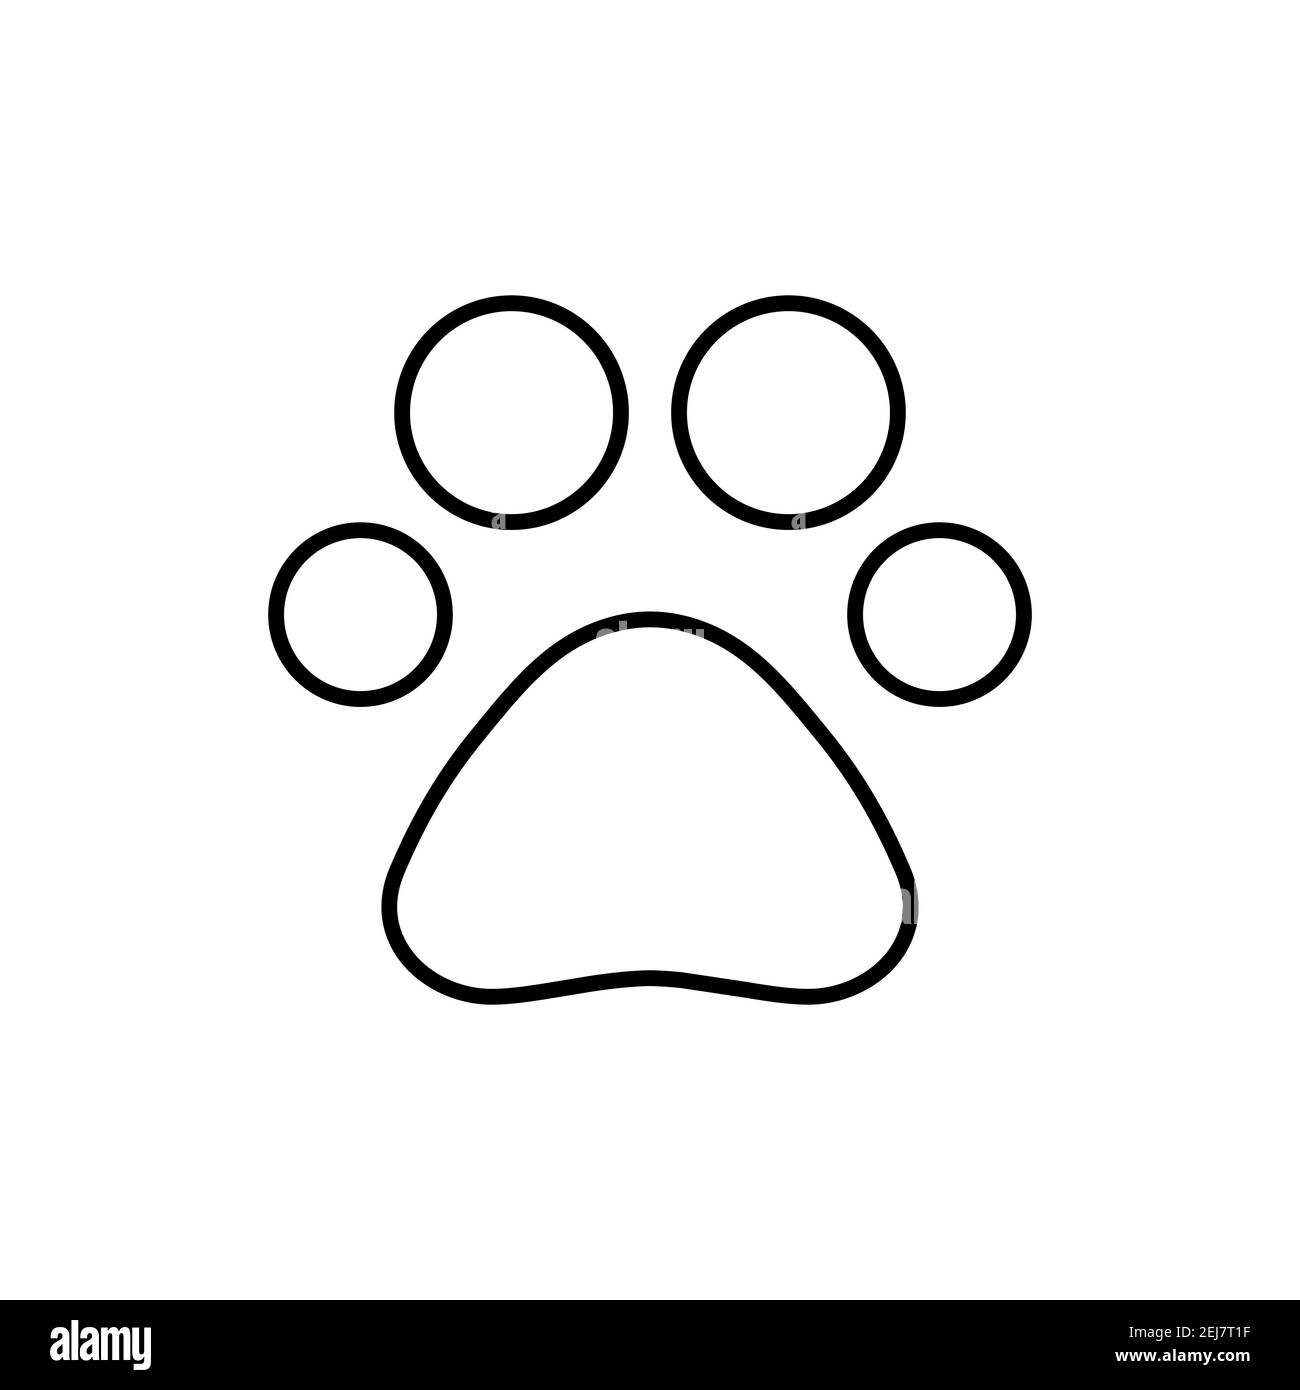 Diseño PNG Y SVG De Corazón Con Trazo De Huella De Perro Para Camisetas